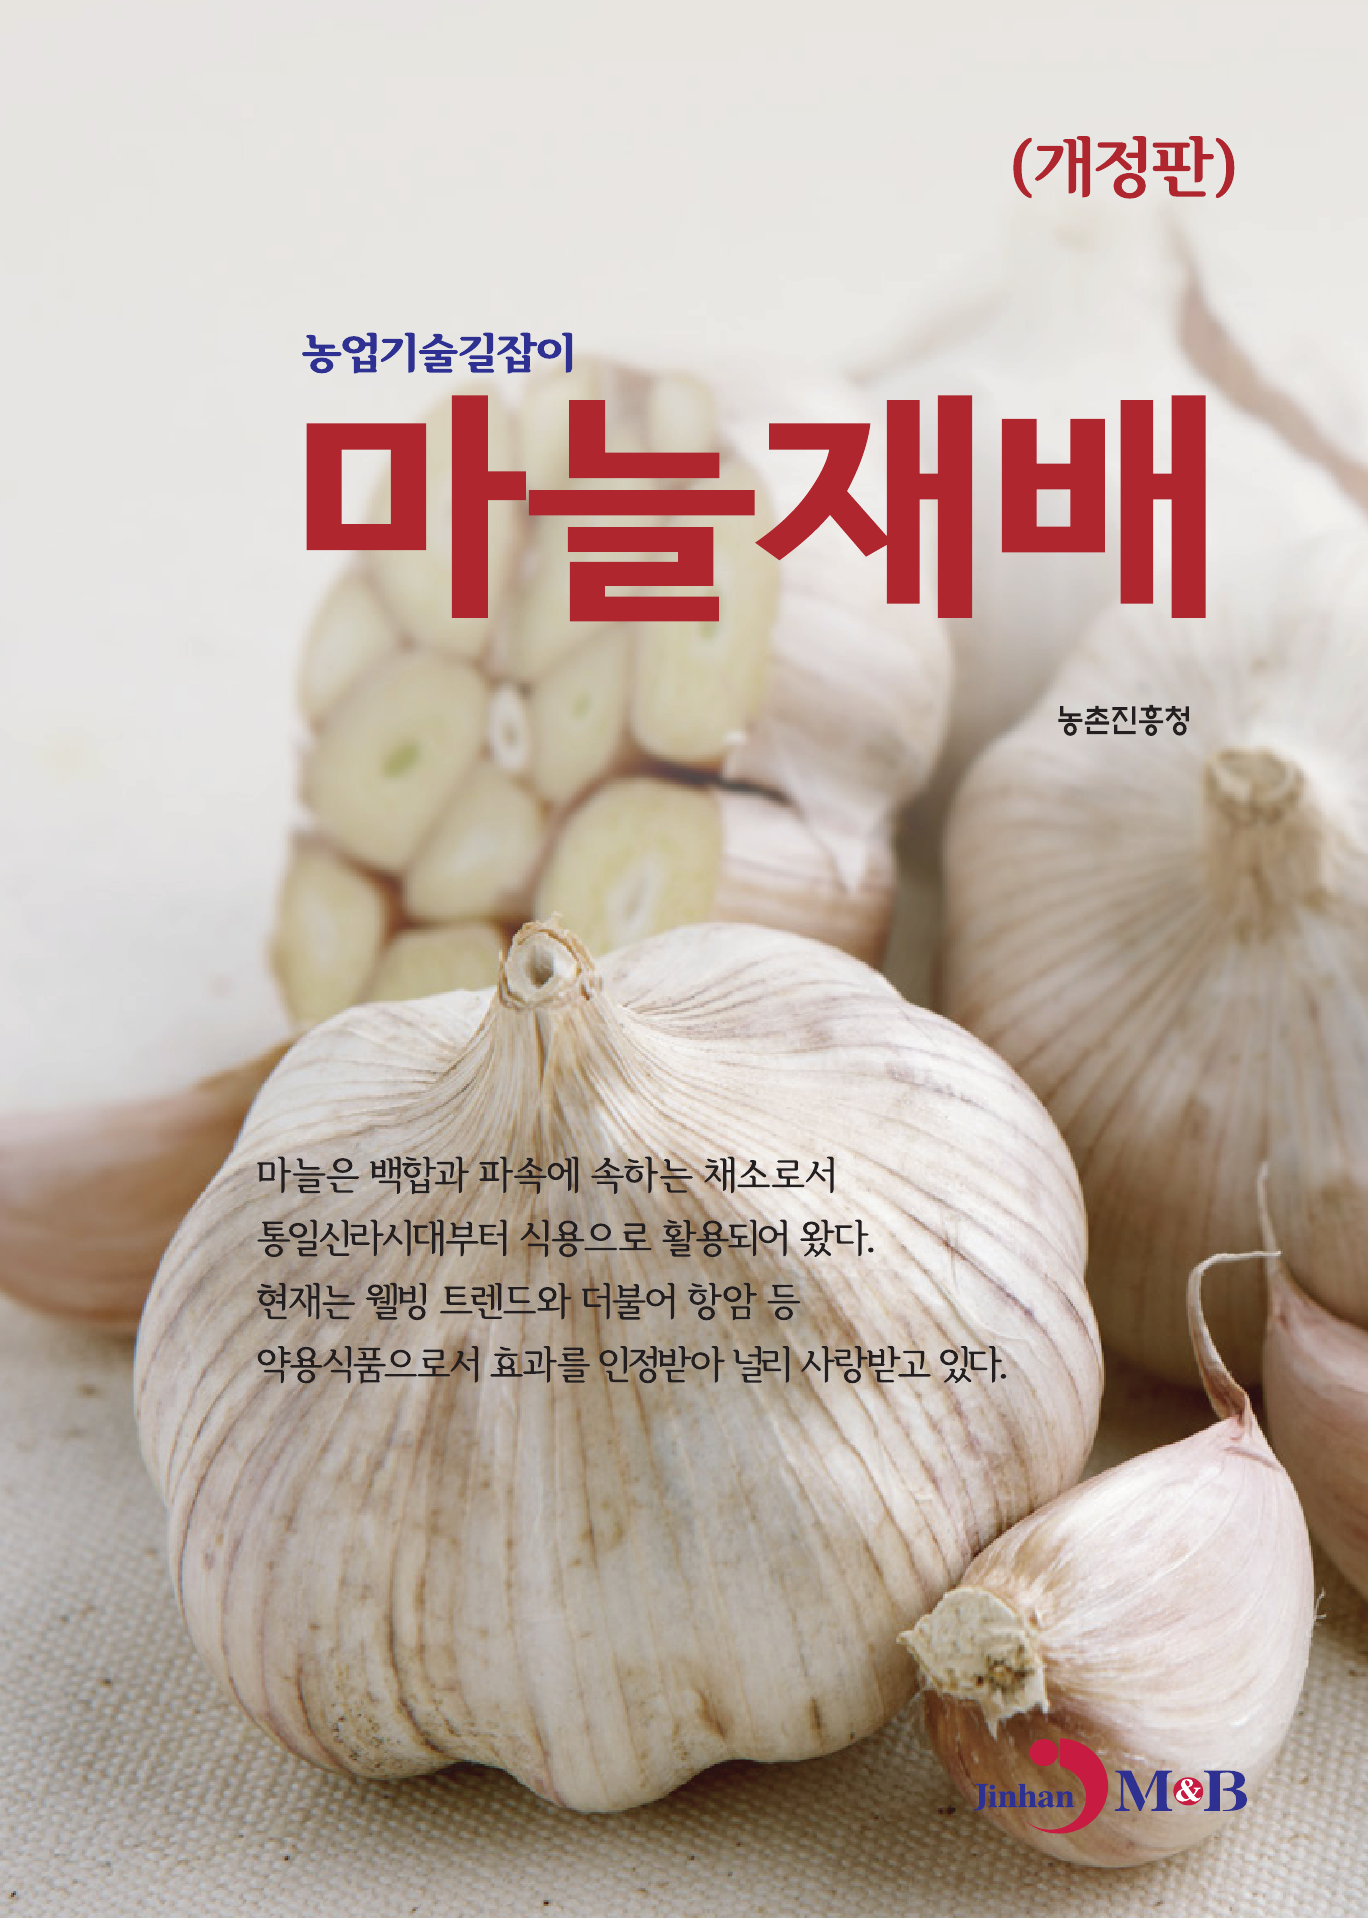 마늘재배 (농업기술길잡이)  개정판